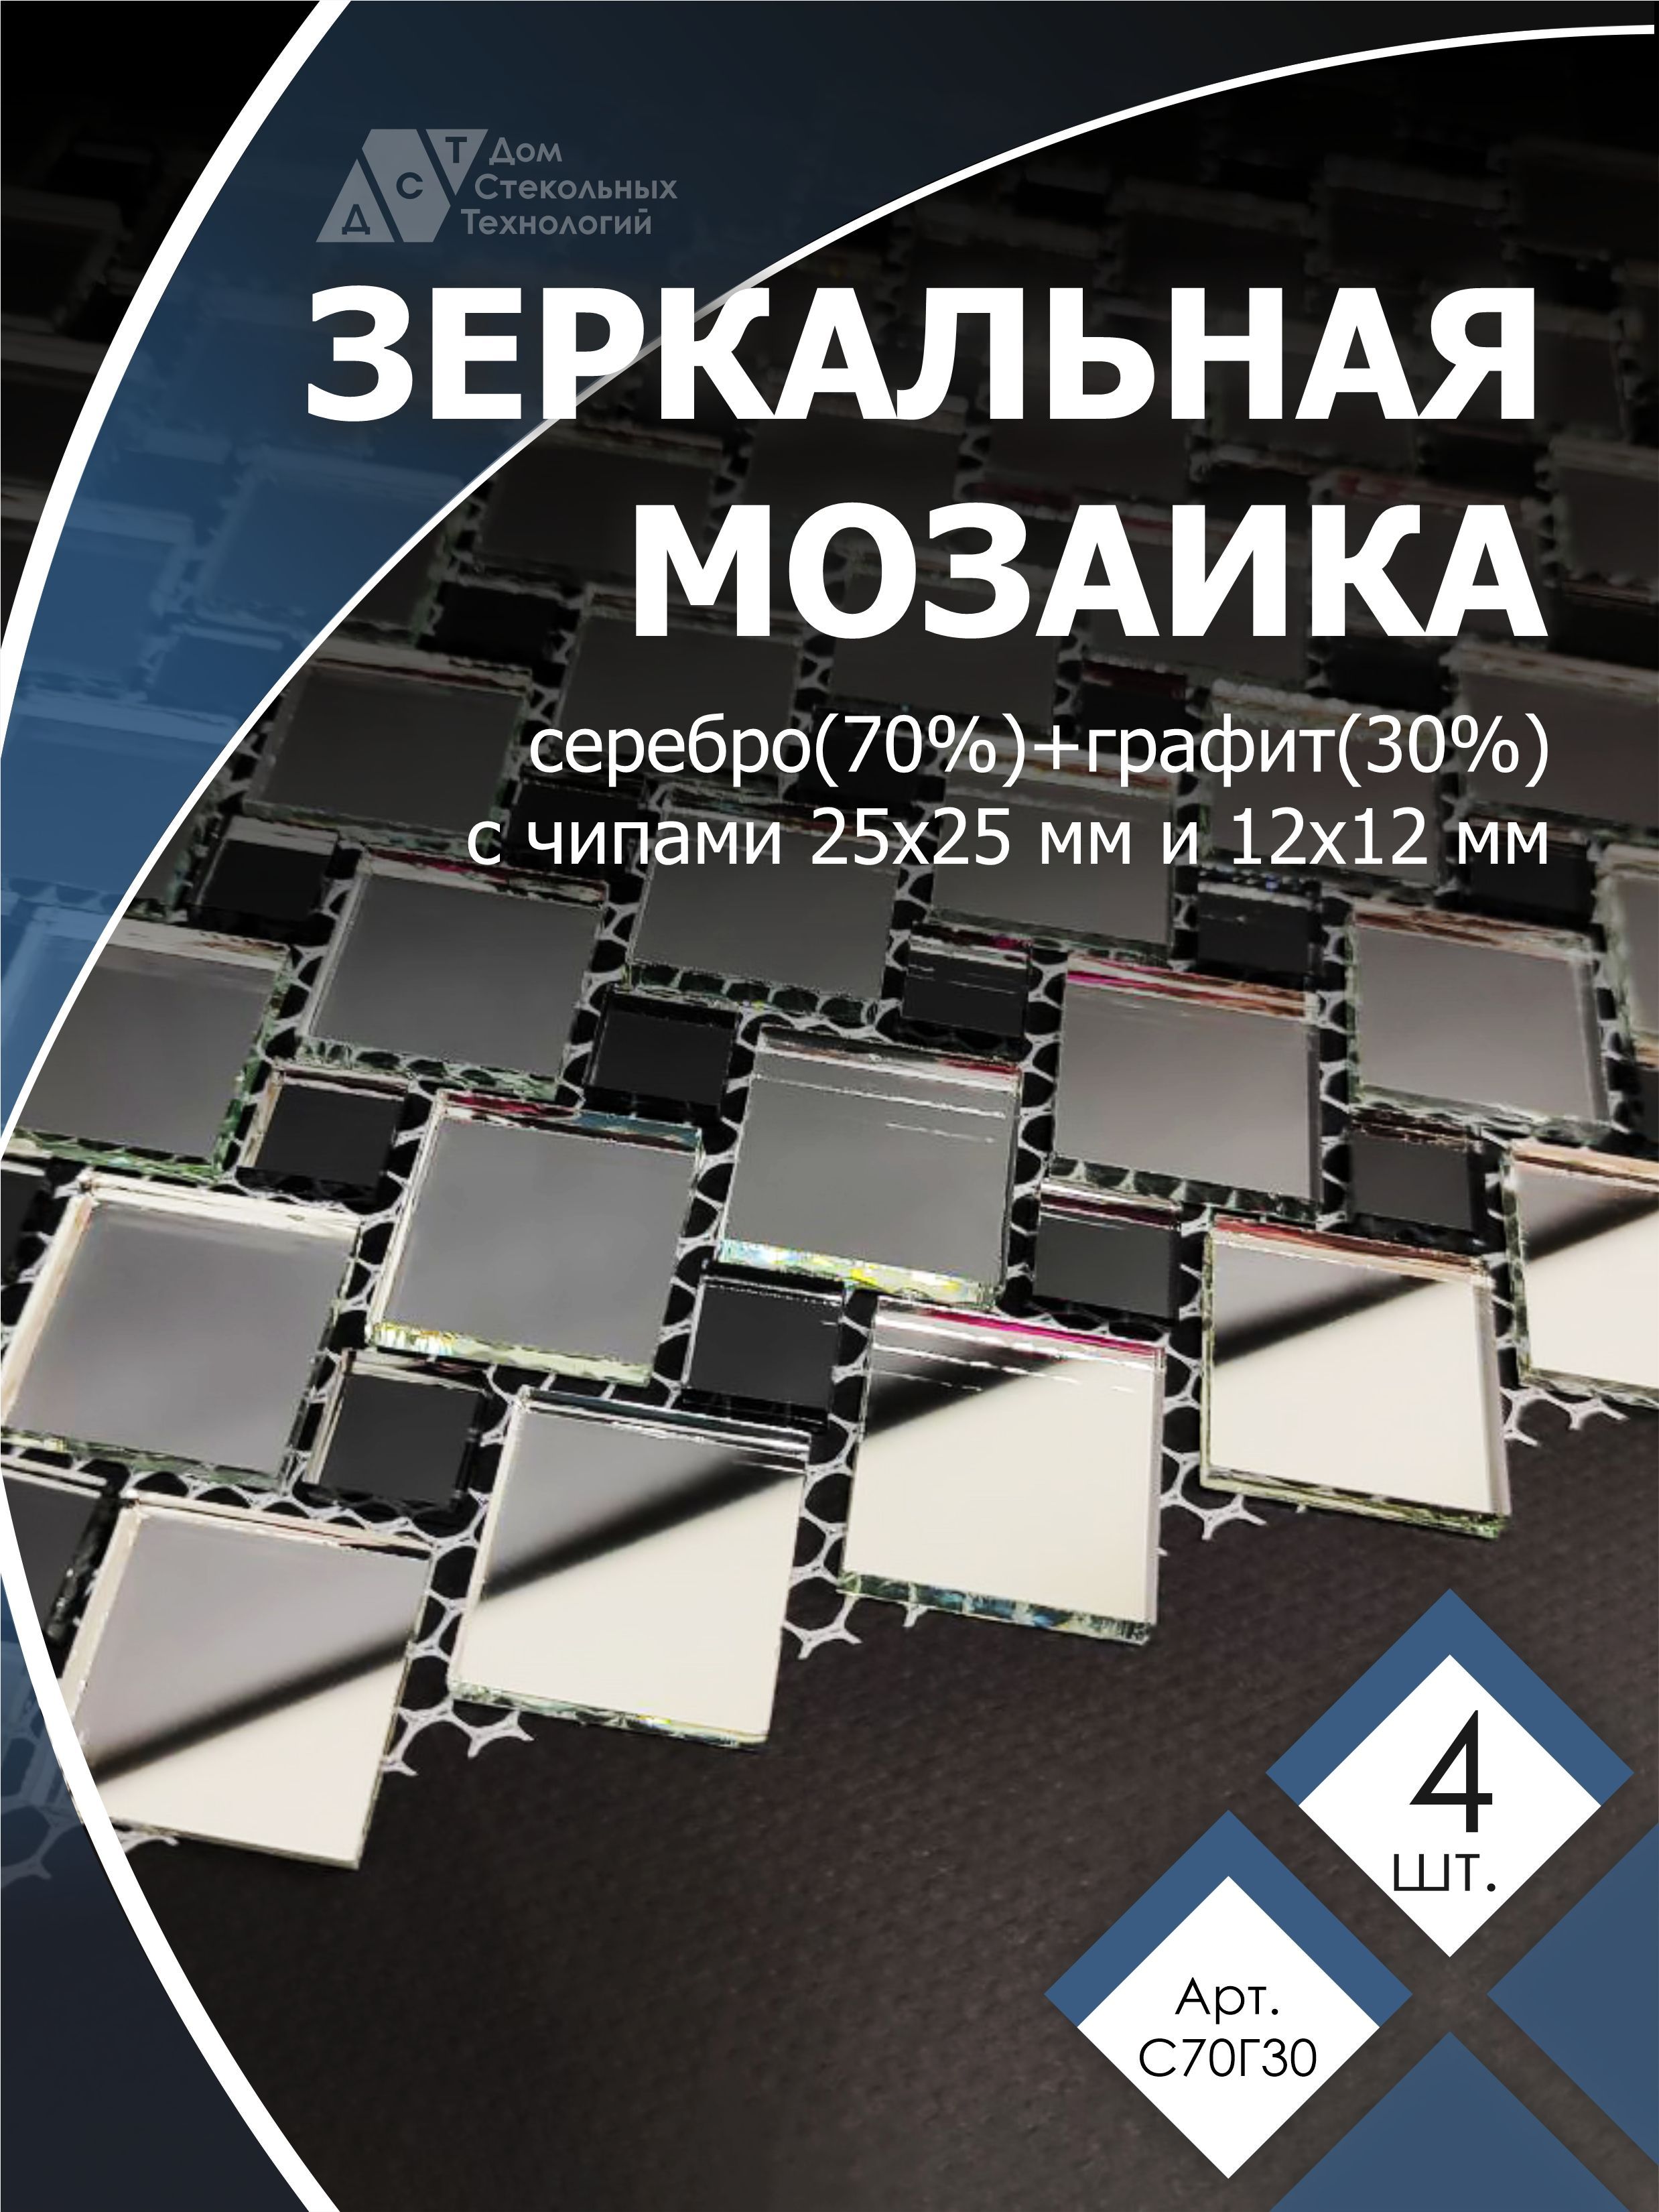 фото Зеркальная мозаика на сетке, дст, 300х300 мм, серебро 70%, графит 30% (4 листов) дом стекольных технологий